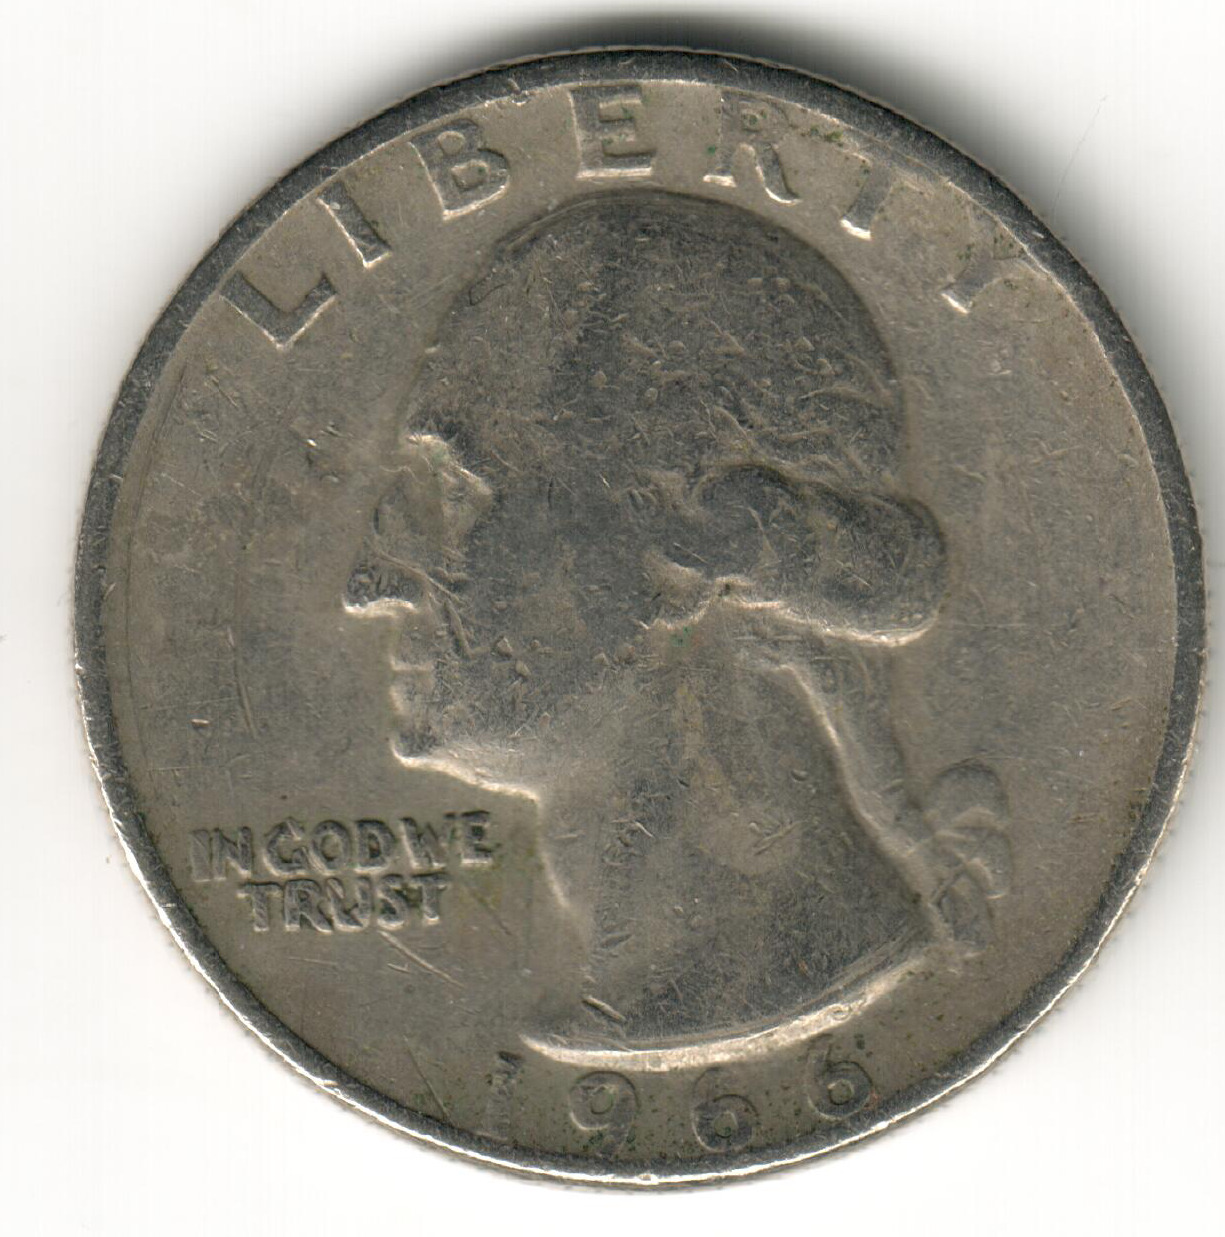 USA - 1966 - Heraldic Eagle Washington ¼ Dollar - #1265